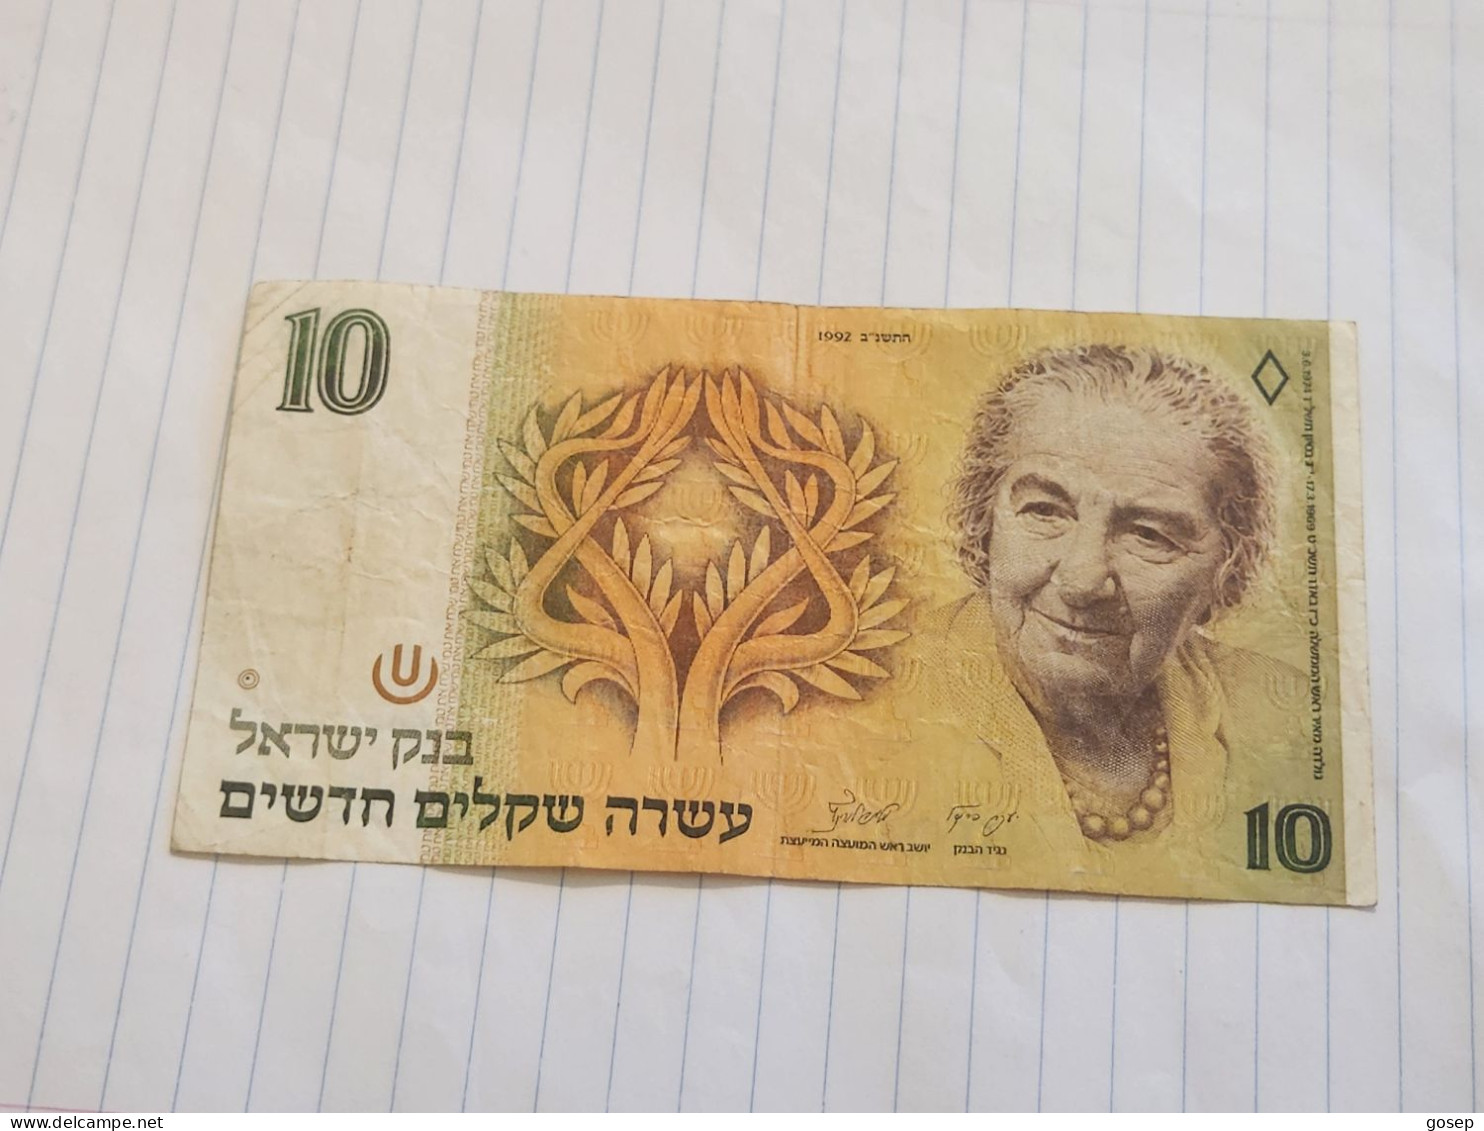 Israel-10 NEW SHEQELIM-GOLDA MEIR-(1992)(541)(LORINCZ/FRENKEL)-(0950877603)-ritr Pen-used-bank Note - Israel